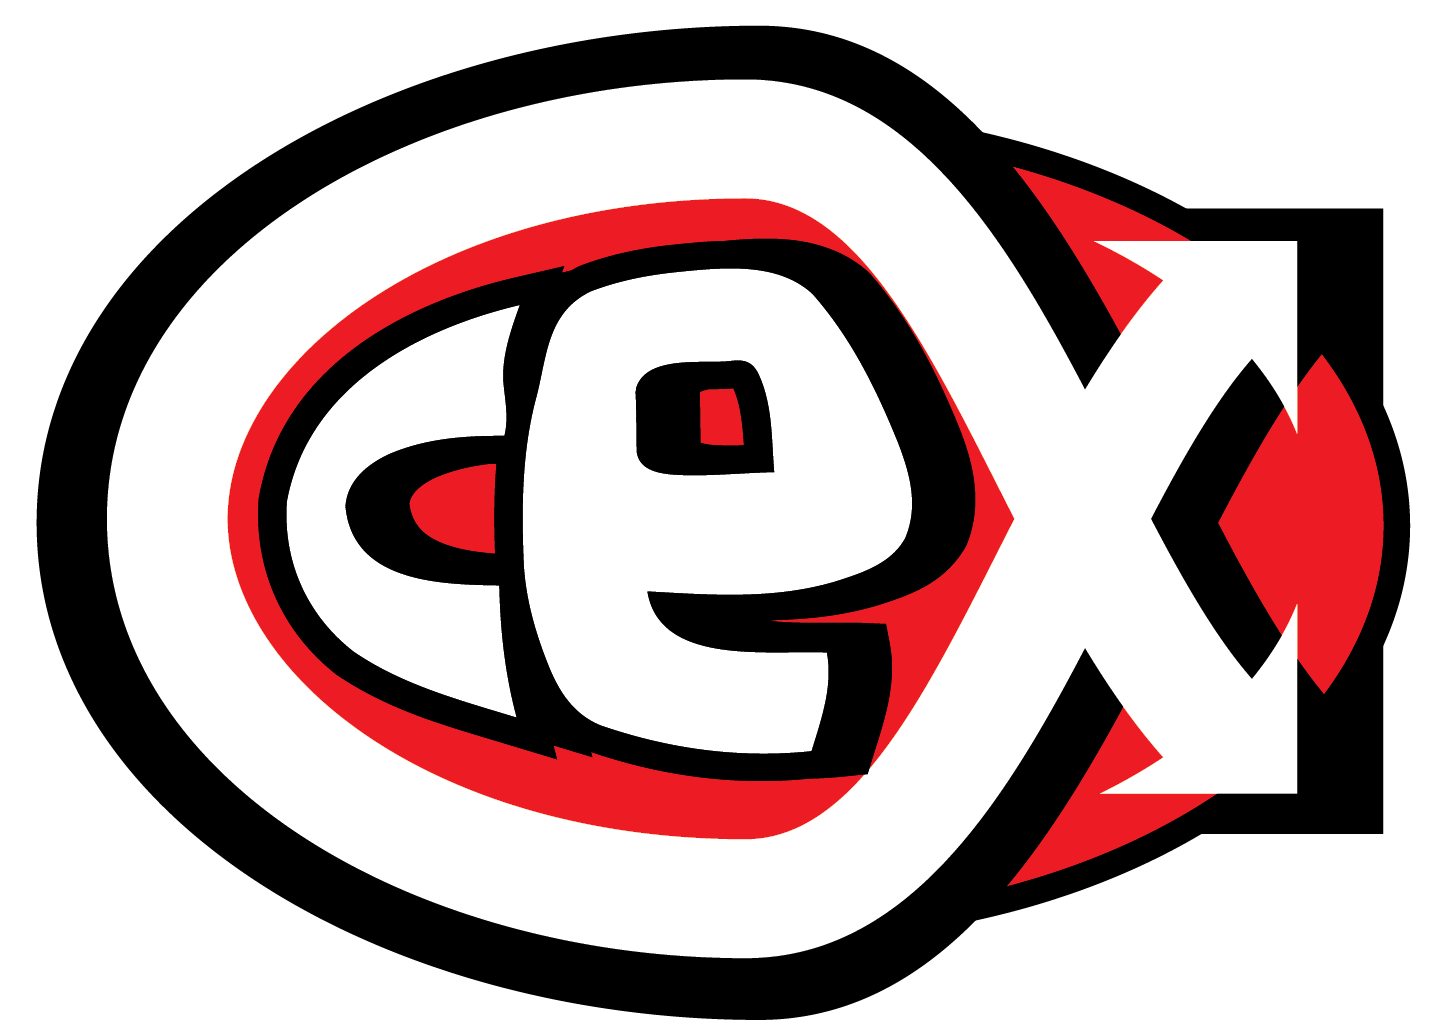 Es-Cex Training